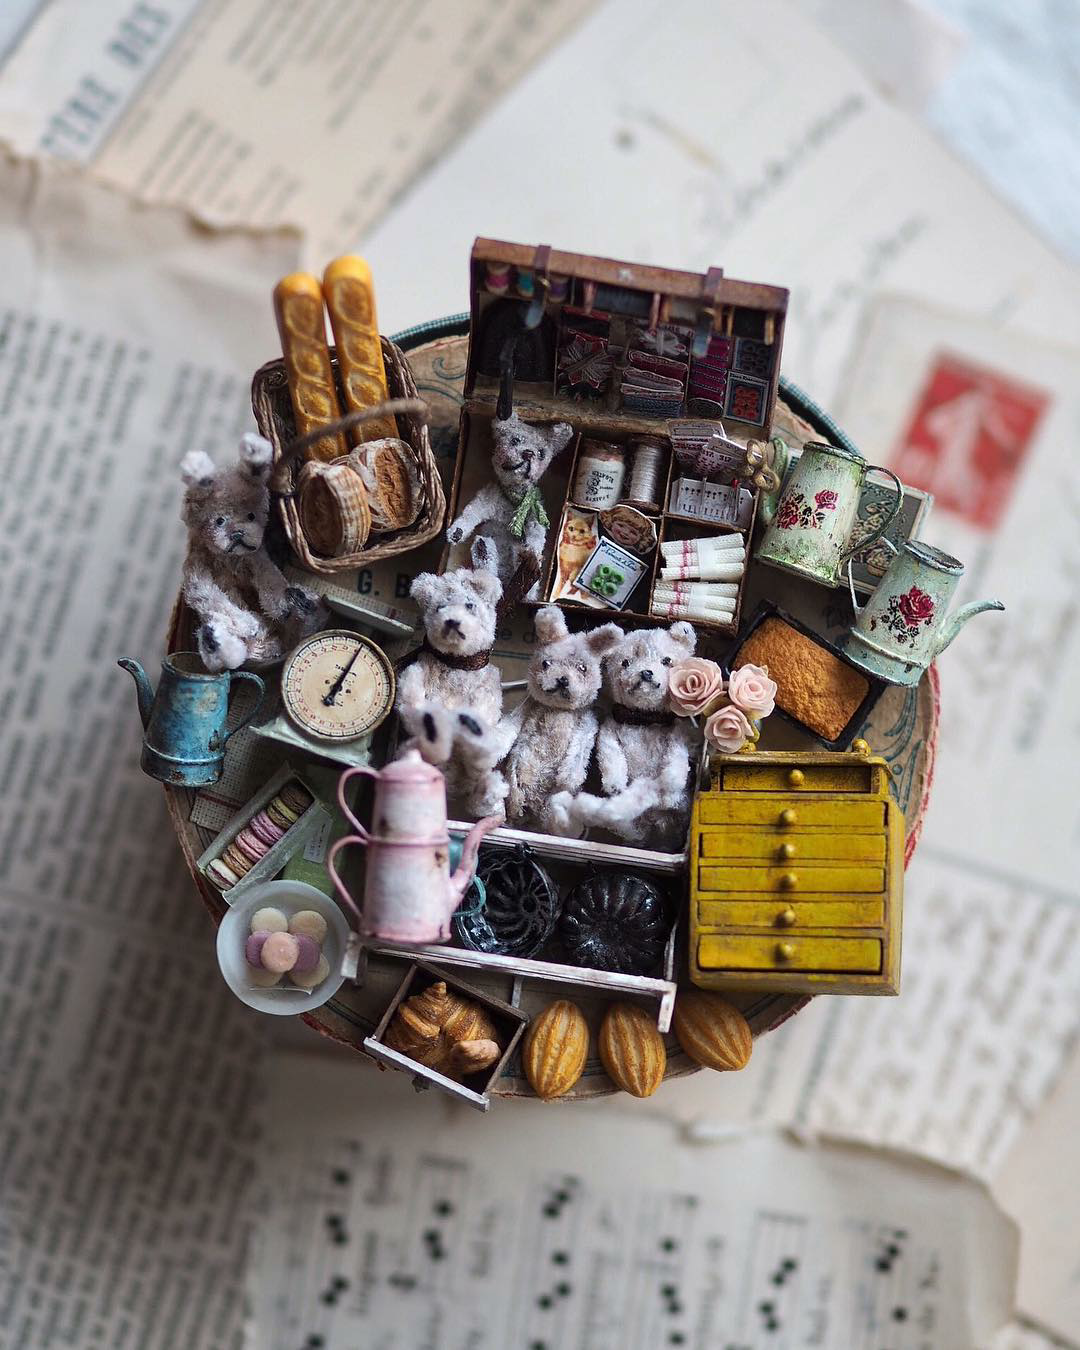 Мир винтажной миниатюры японской художницы Kiyomi мастерство,миниатюра,творчество